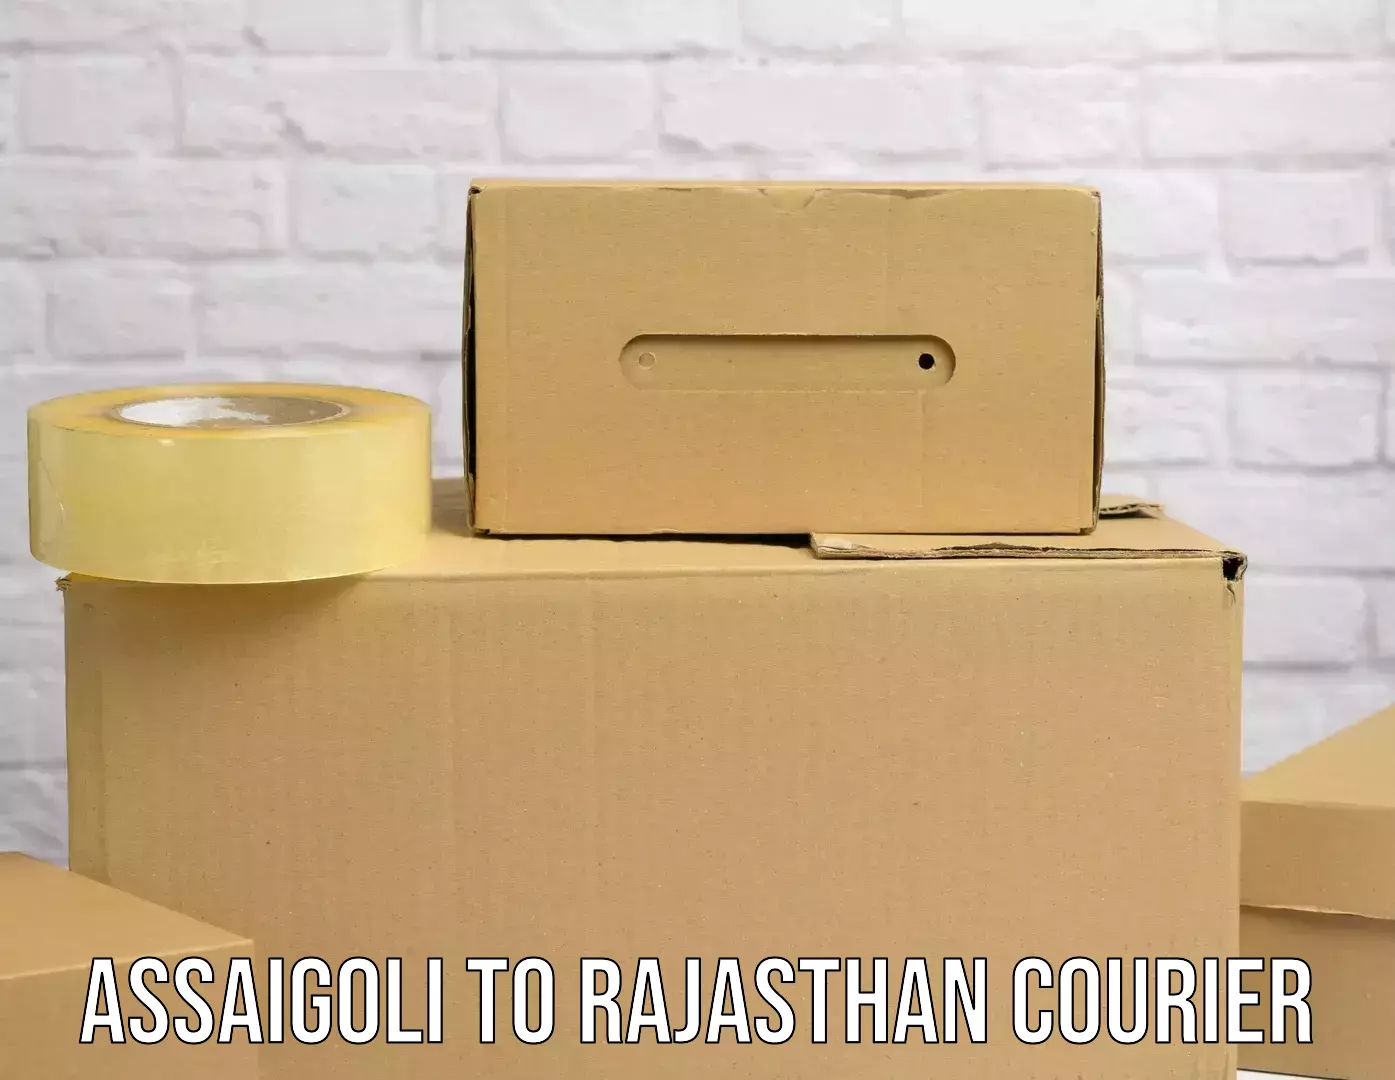 24-hour courier services Assaigoli to Ras Pali